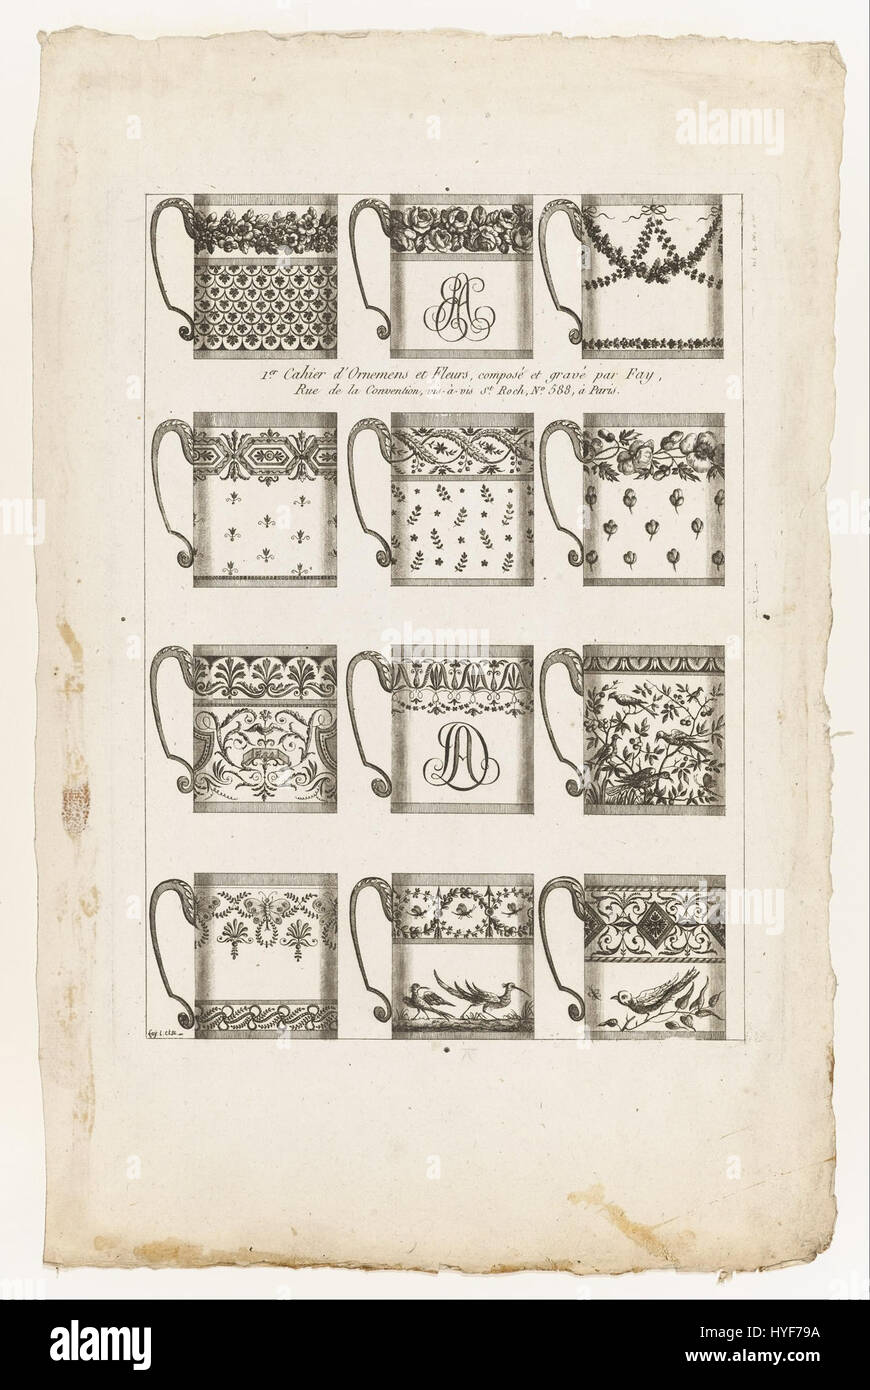 Jean Baptiste Fay progetta per tazze di cioccolato, la piastra 1 a partire dal 1° Cahier d'Ornemens et Fleurs Google Art Project Foto Stock